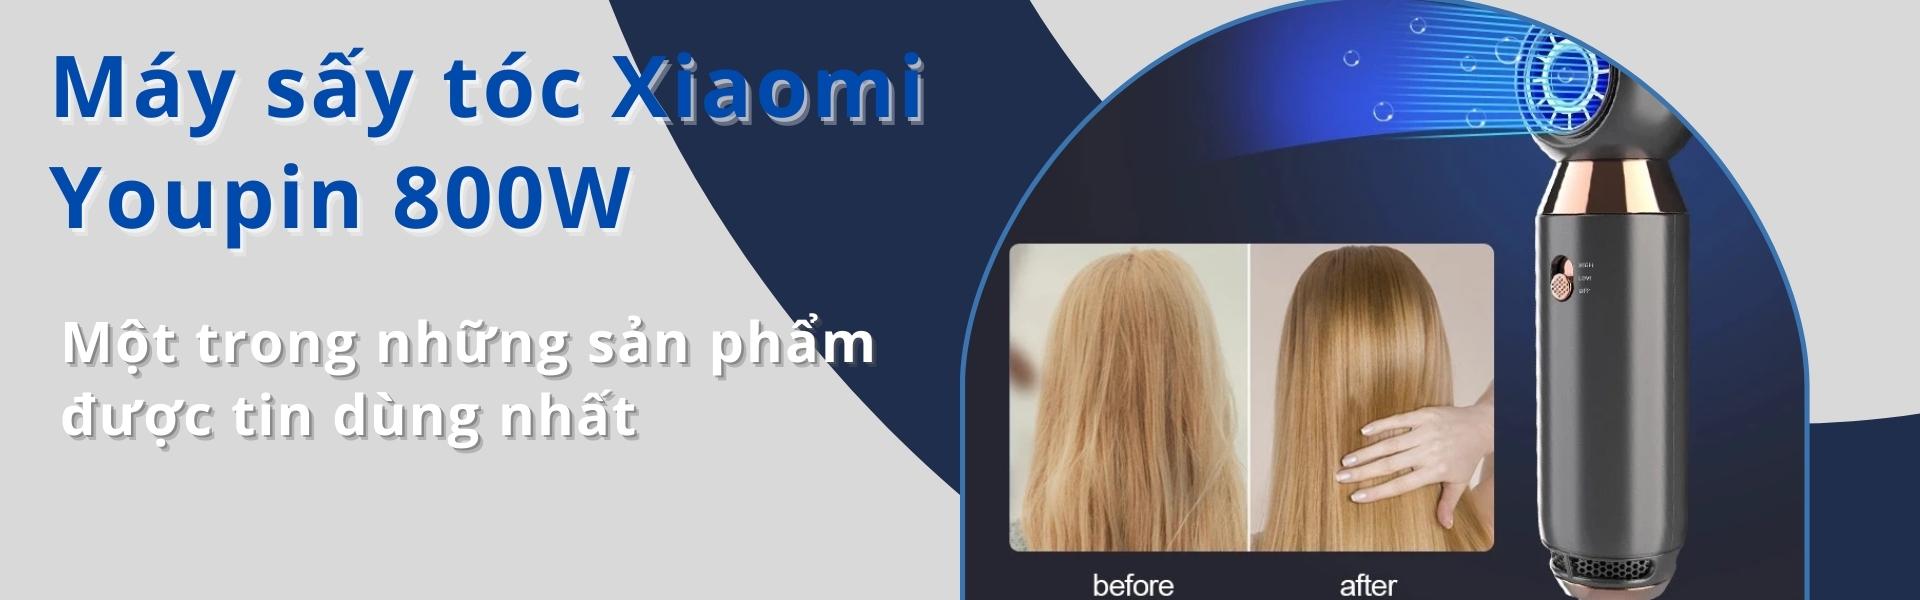 Máy sấy tóc Xiaomi Youpin 800W tạo ion âm với nhiệt độ không đổi giúp tạo kiểu tóc nhanh chuyên nghiệp